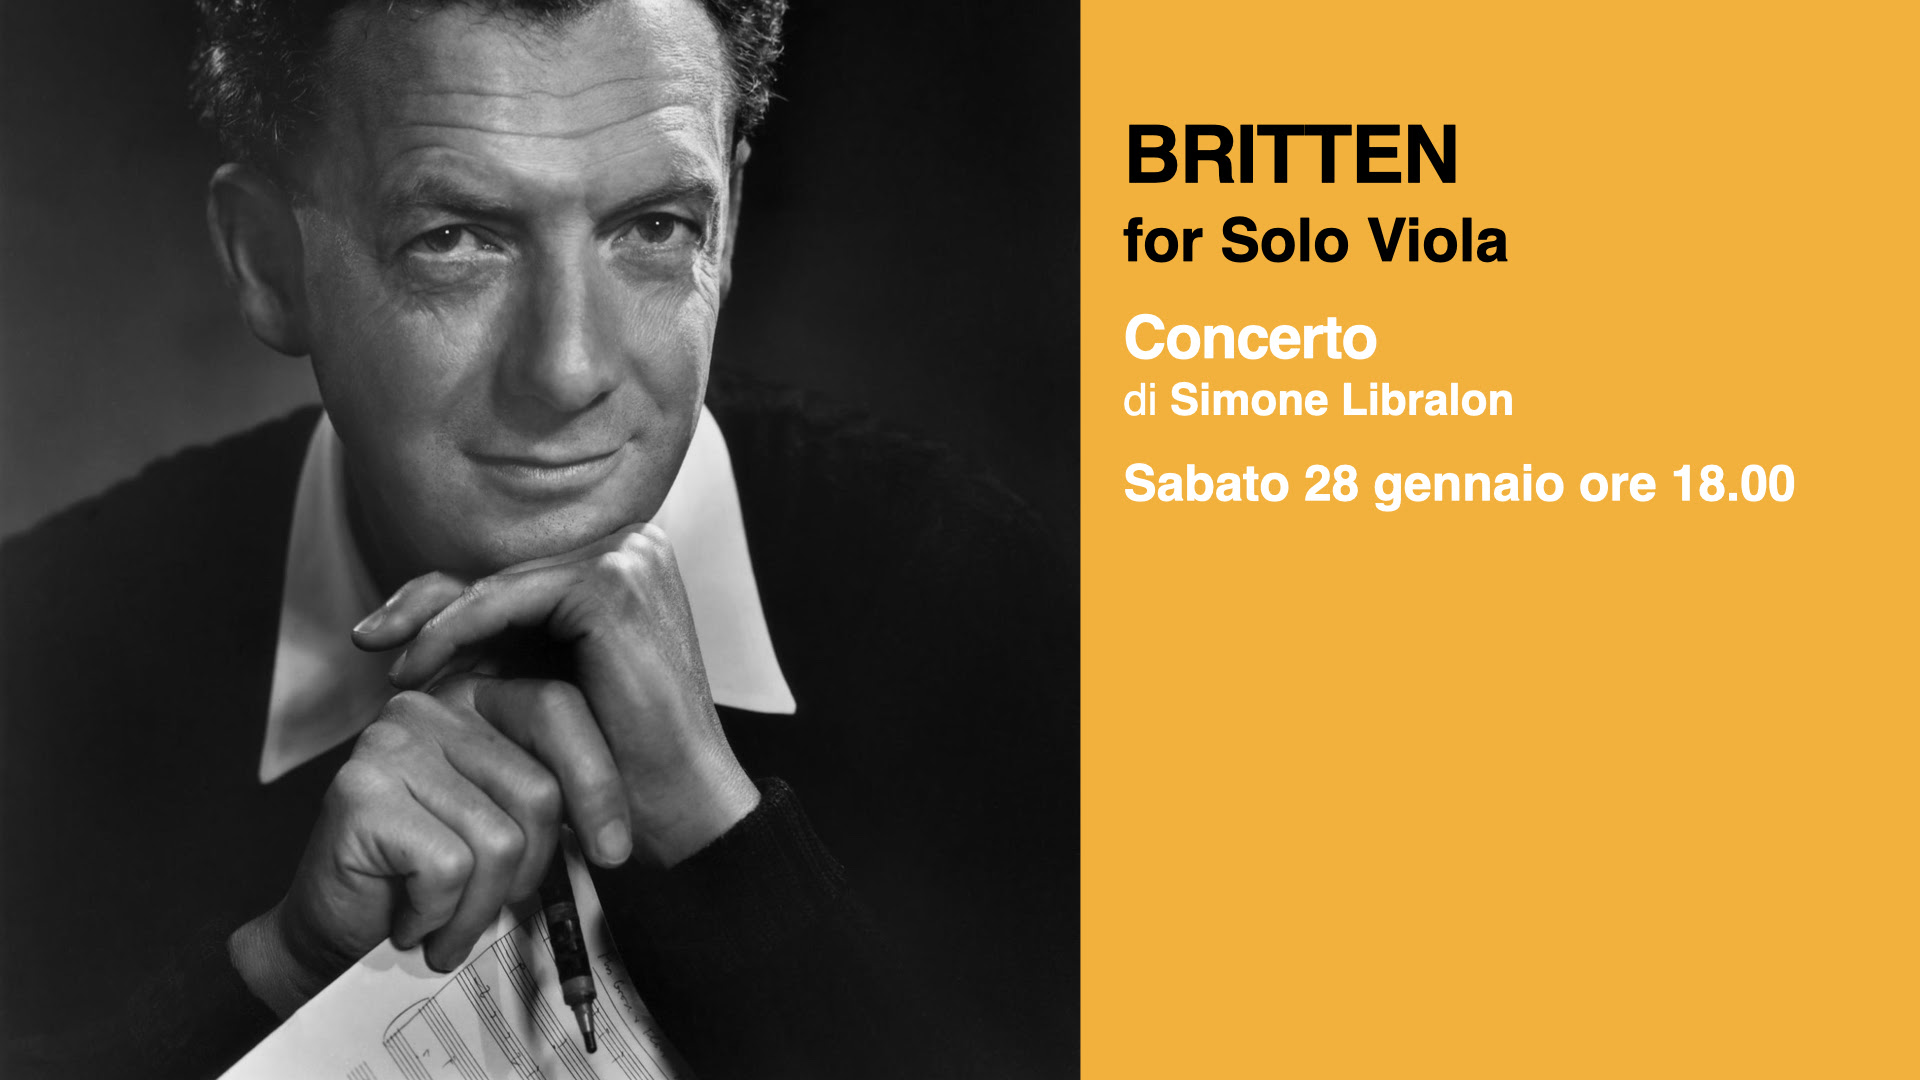 Britten for Solo Viola